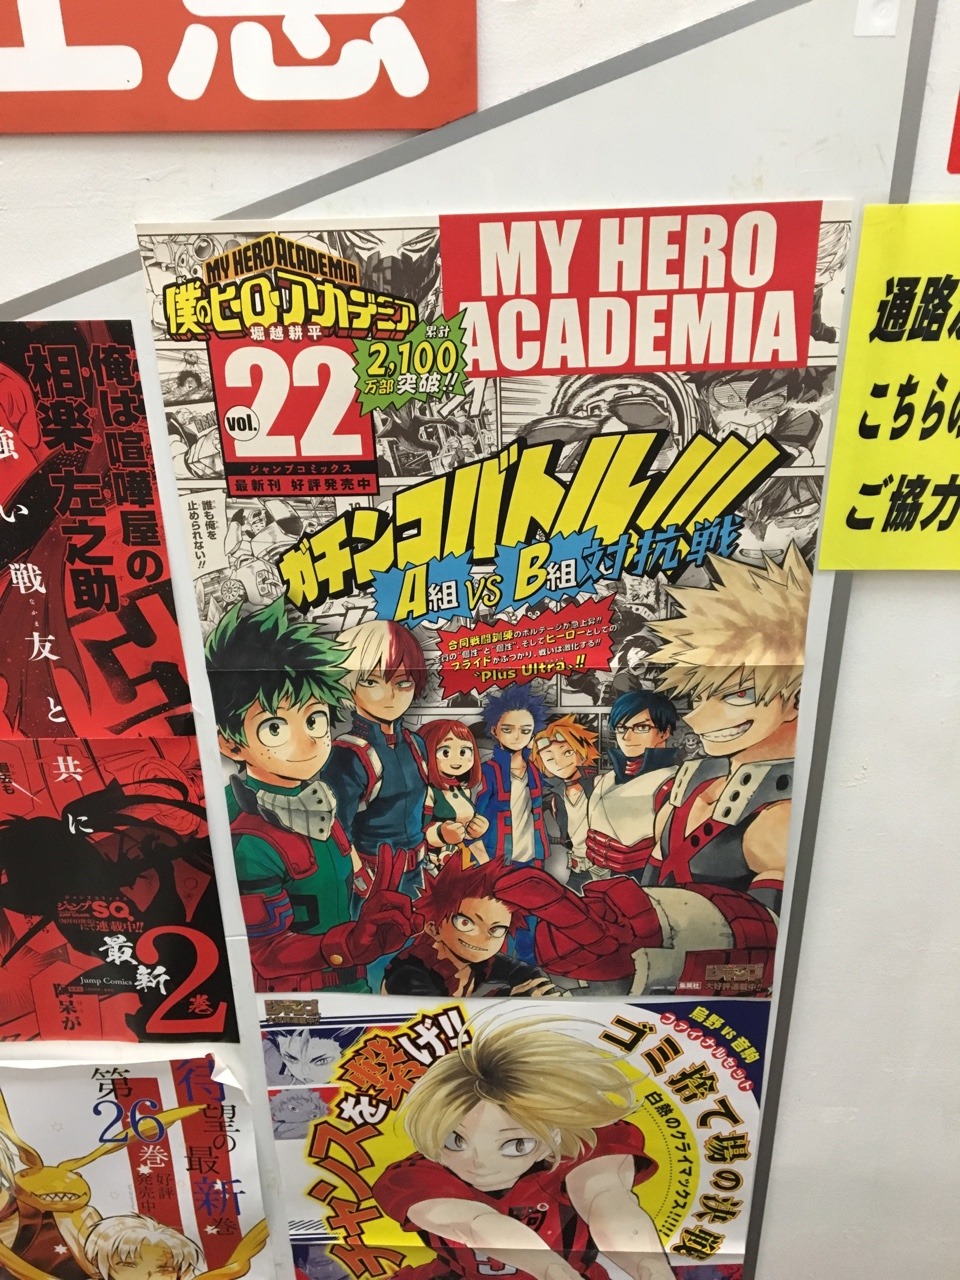 Tododeku Crumbs Bookstore Ad For The My Hero Academia Manga